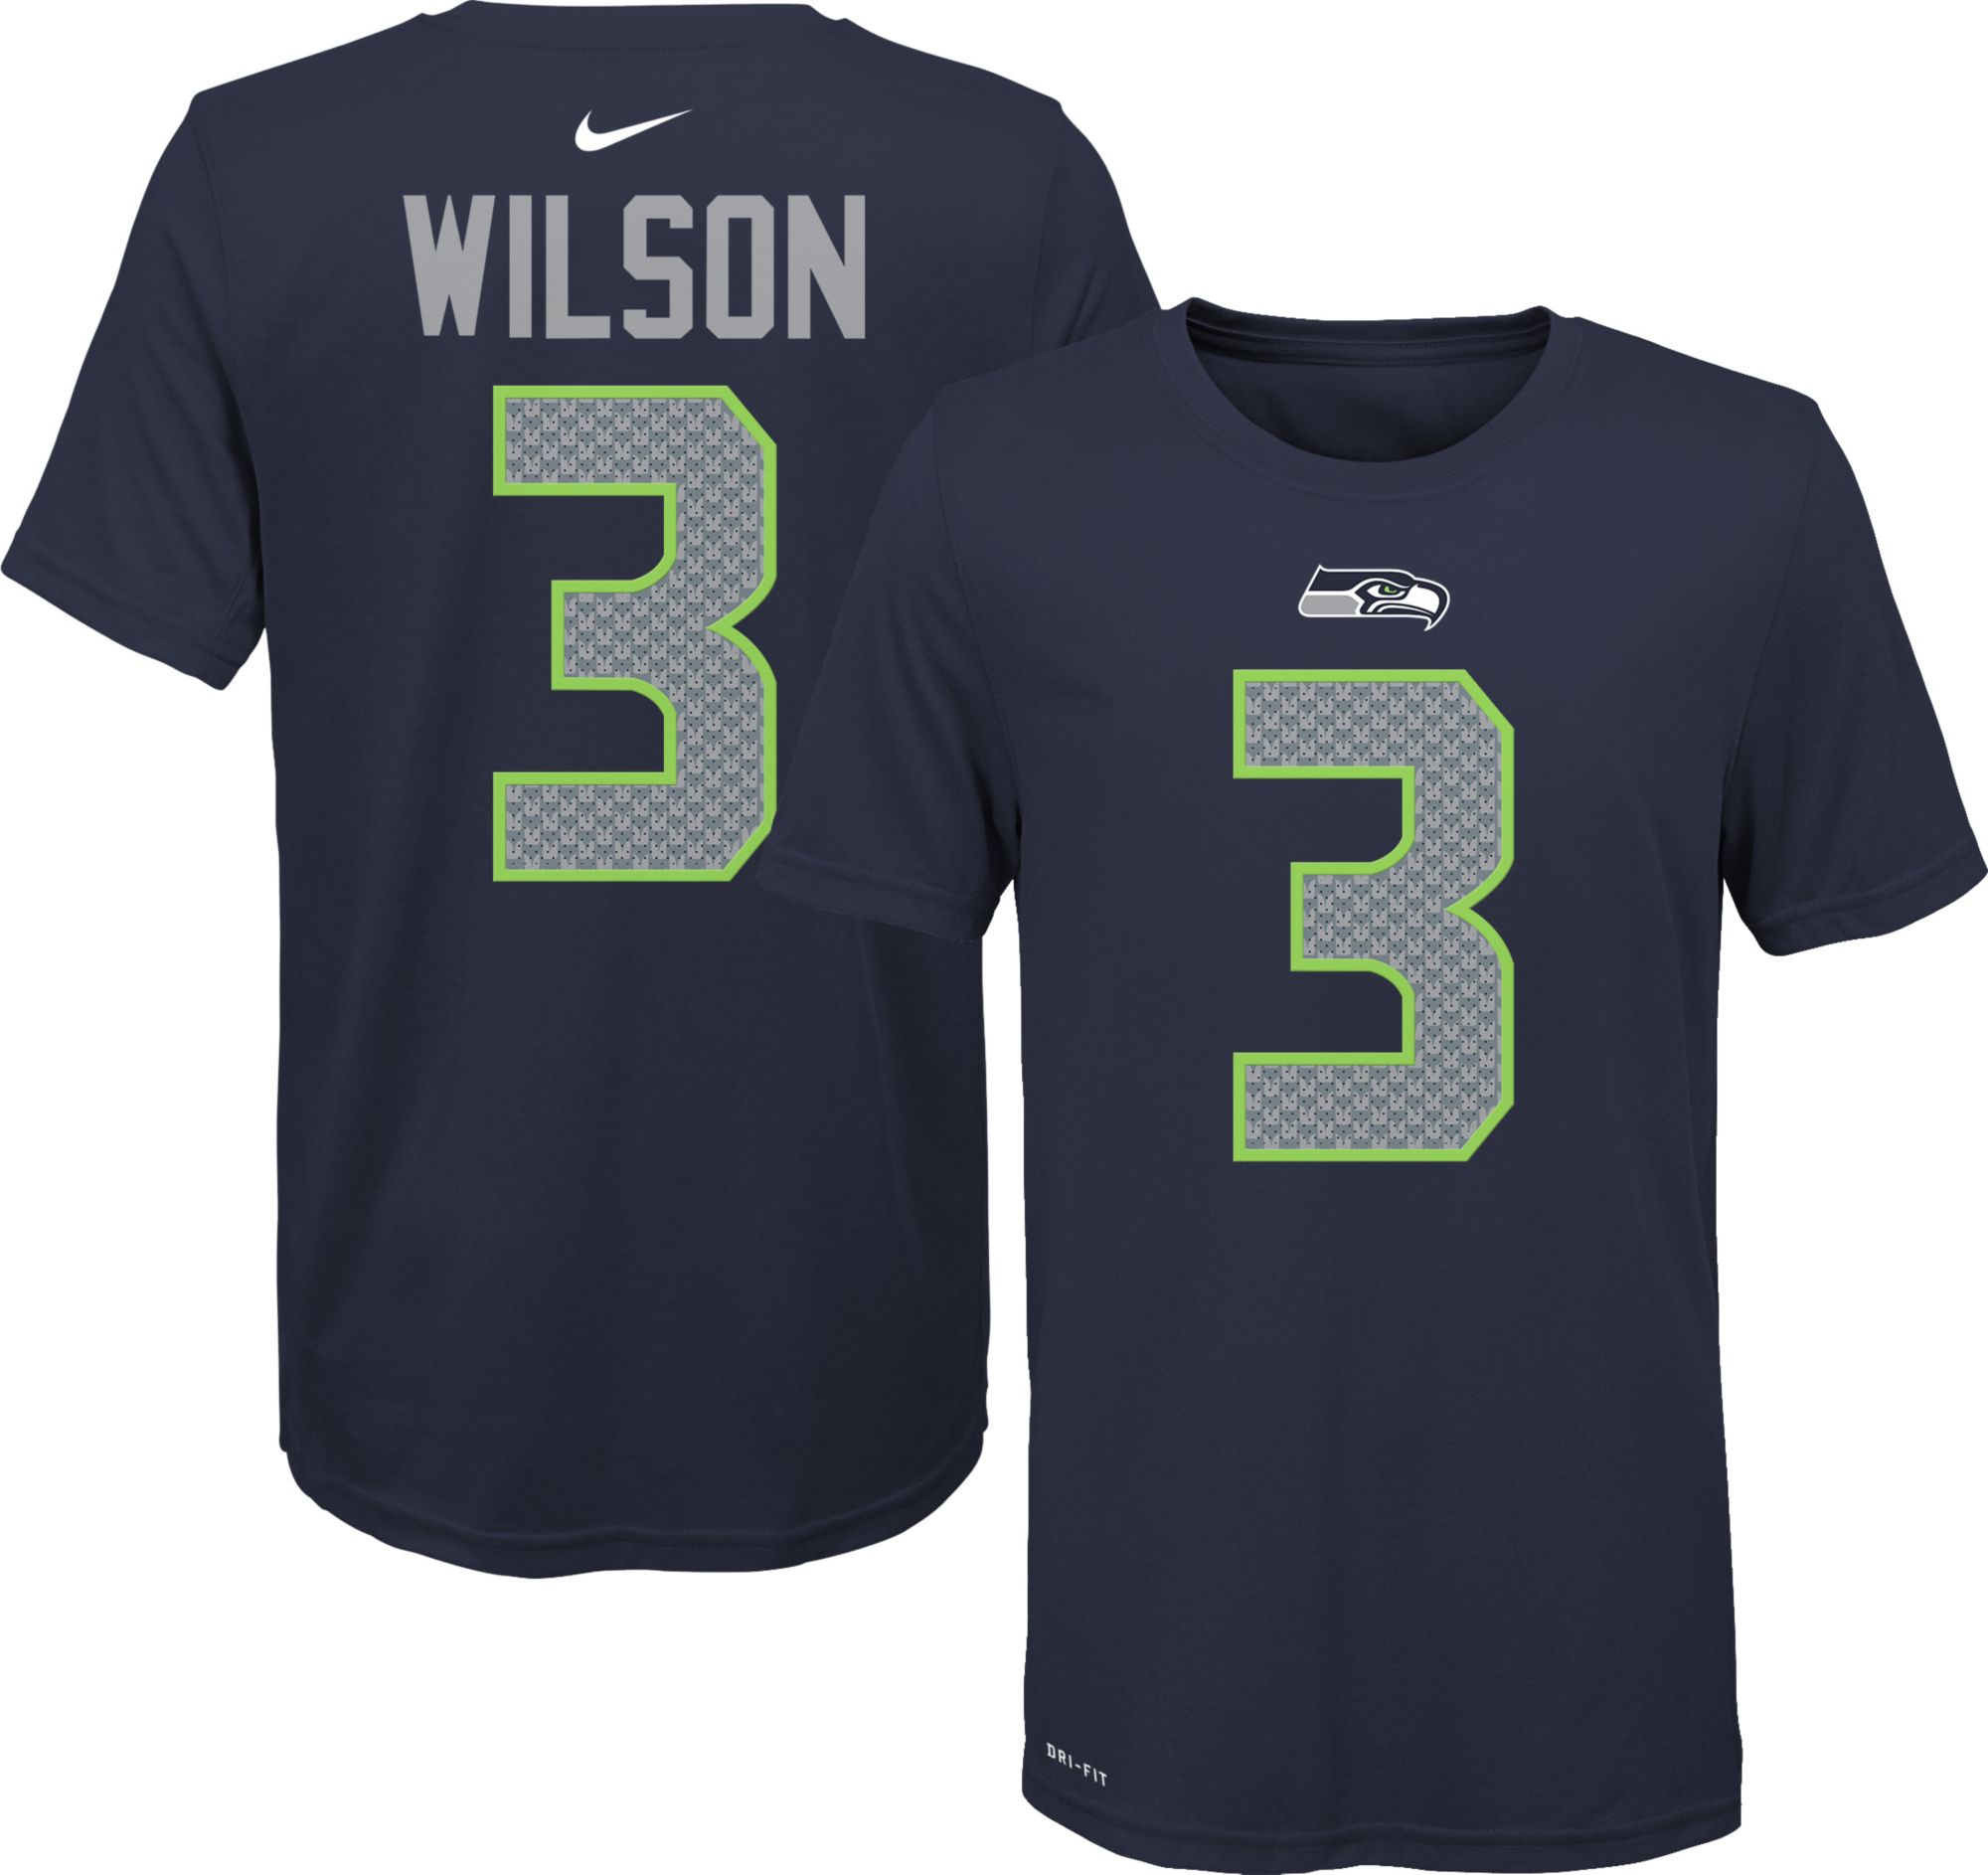 wilson logo t shirt